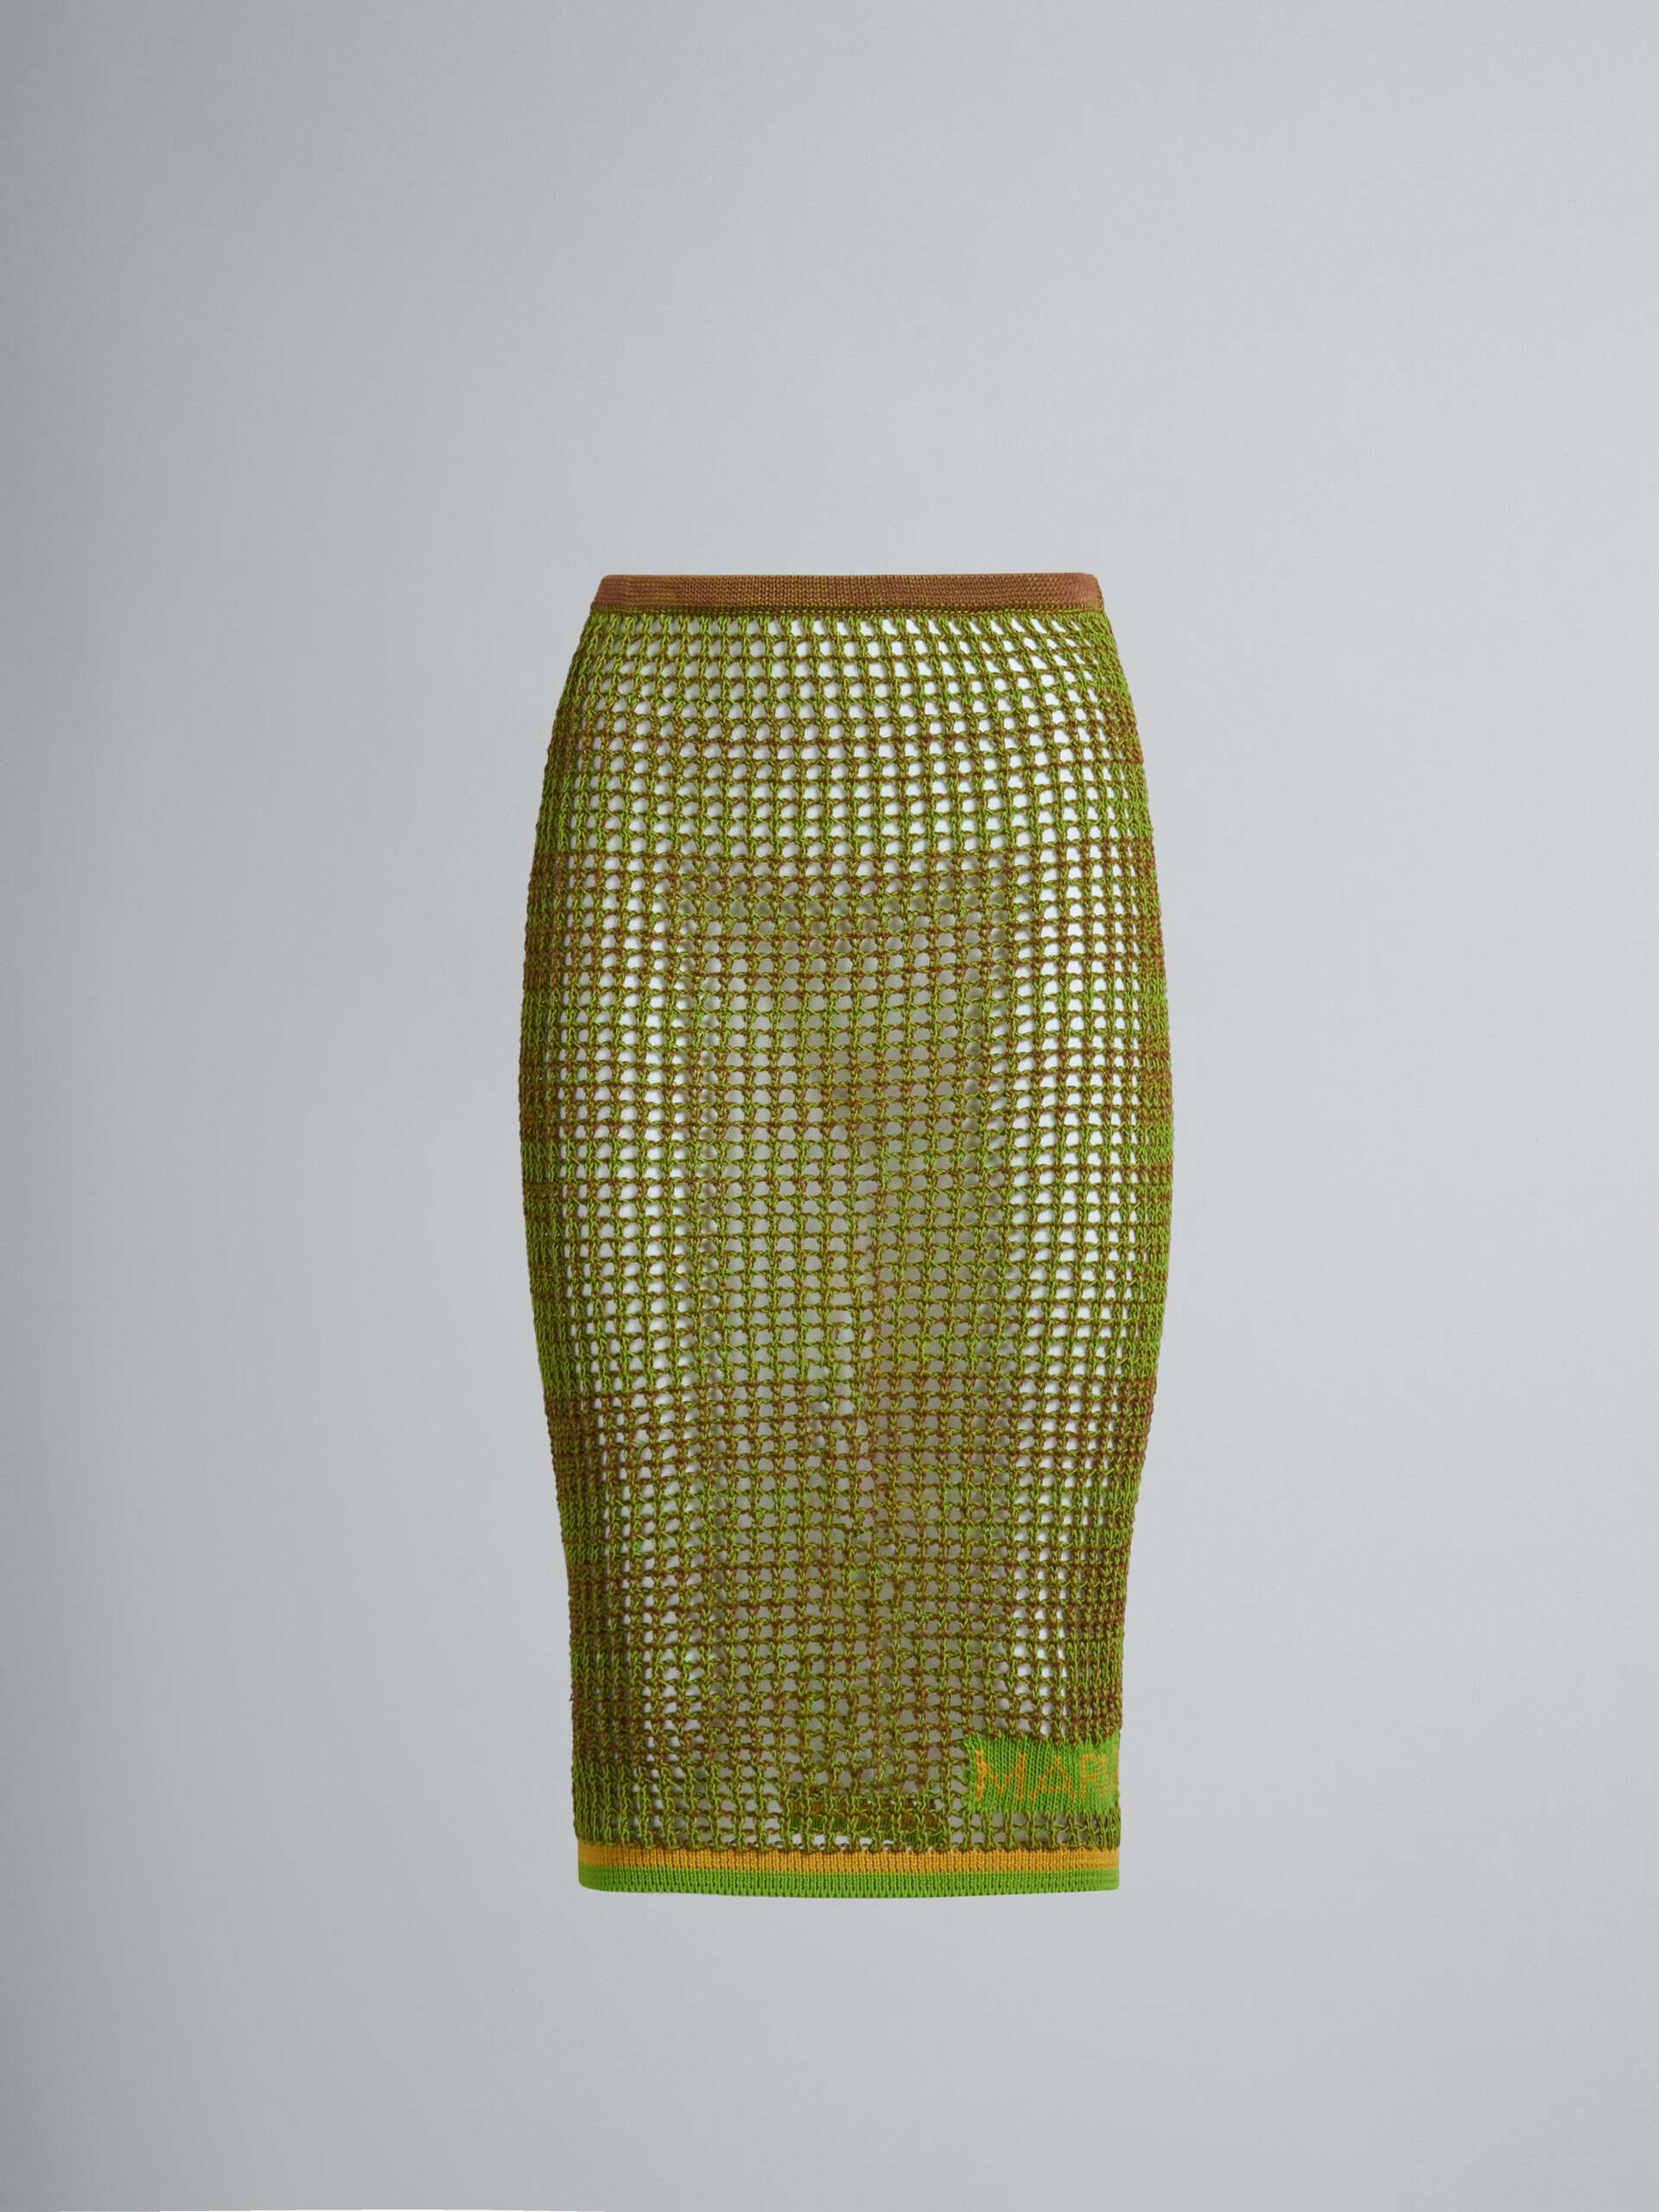 グリーンのオーガニックコットン製ネットミディ丈スカート - スカート - Image 2